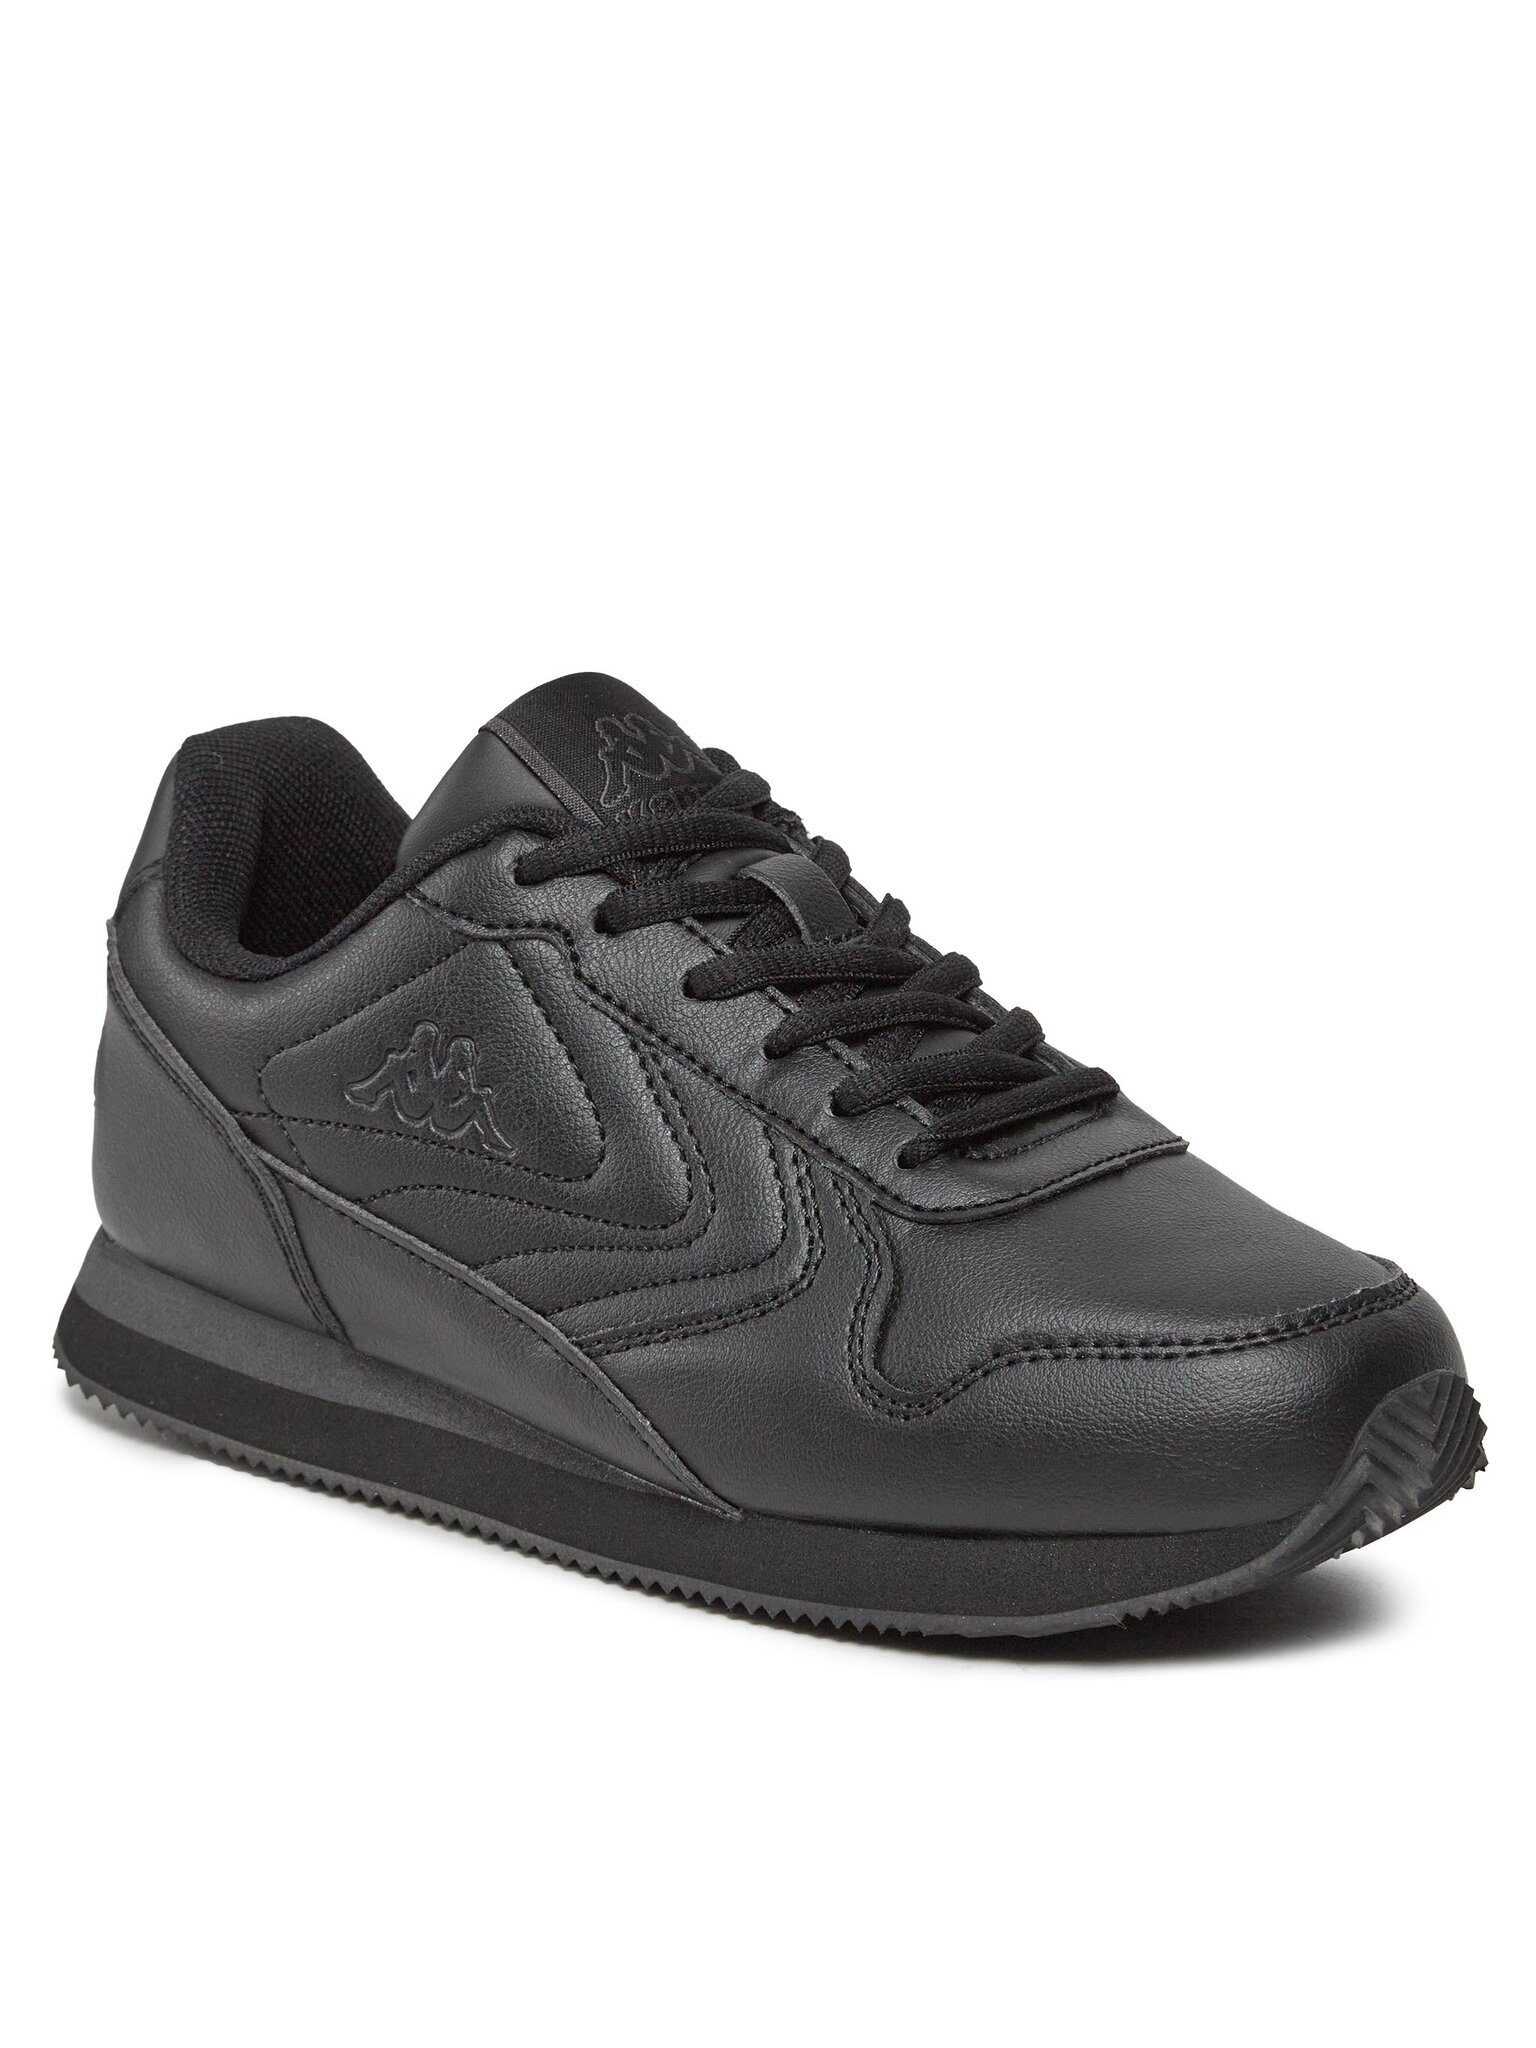 Kappa Sneakers Logo Feeve 351G1WW Black/Grey Dk A10 Sneaker